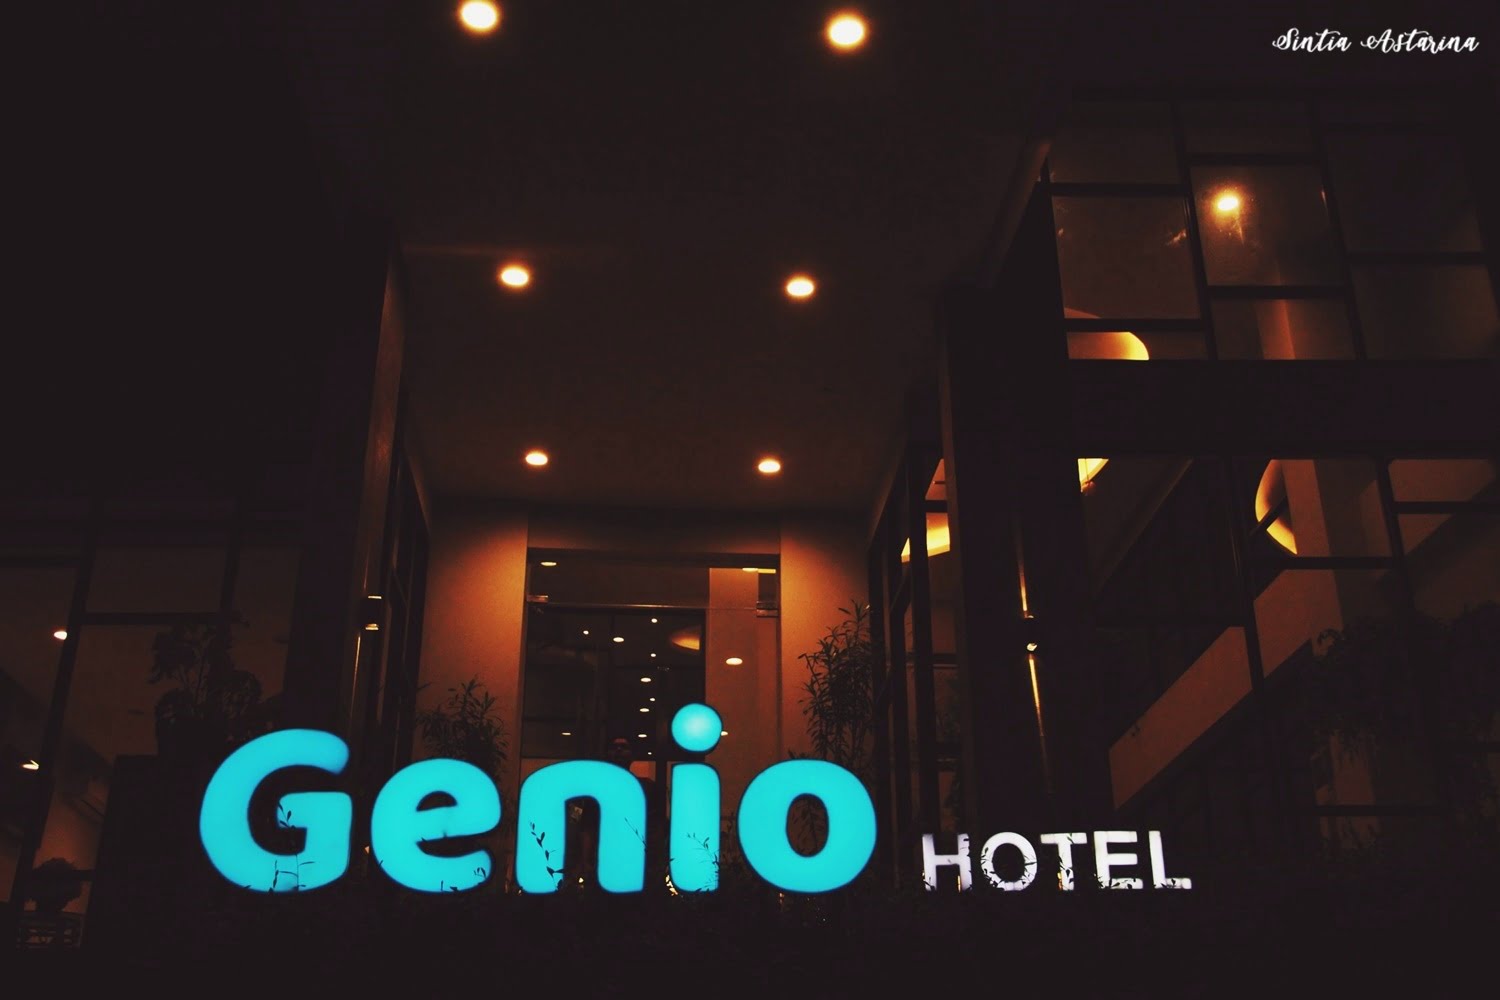 Pengalaman Menginap di Genio Hotel Manado Selama 4 Hari 3 Malam